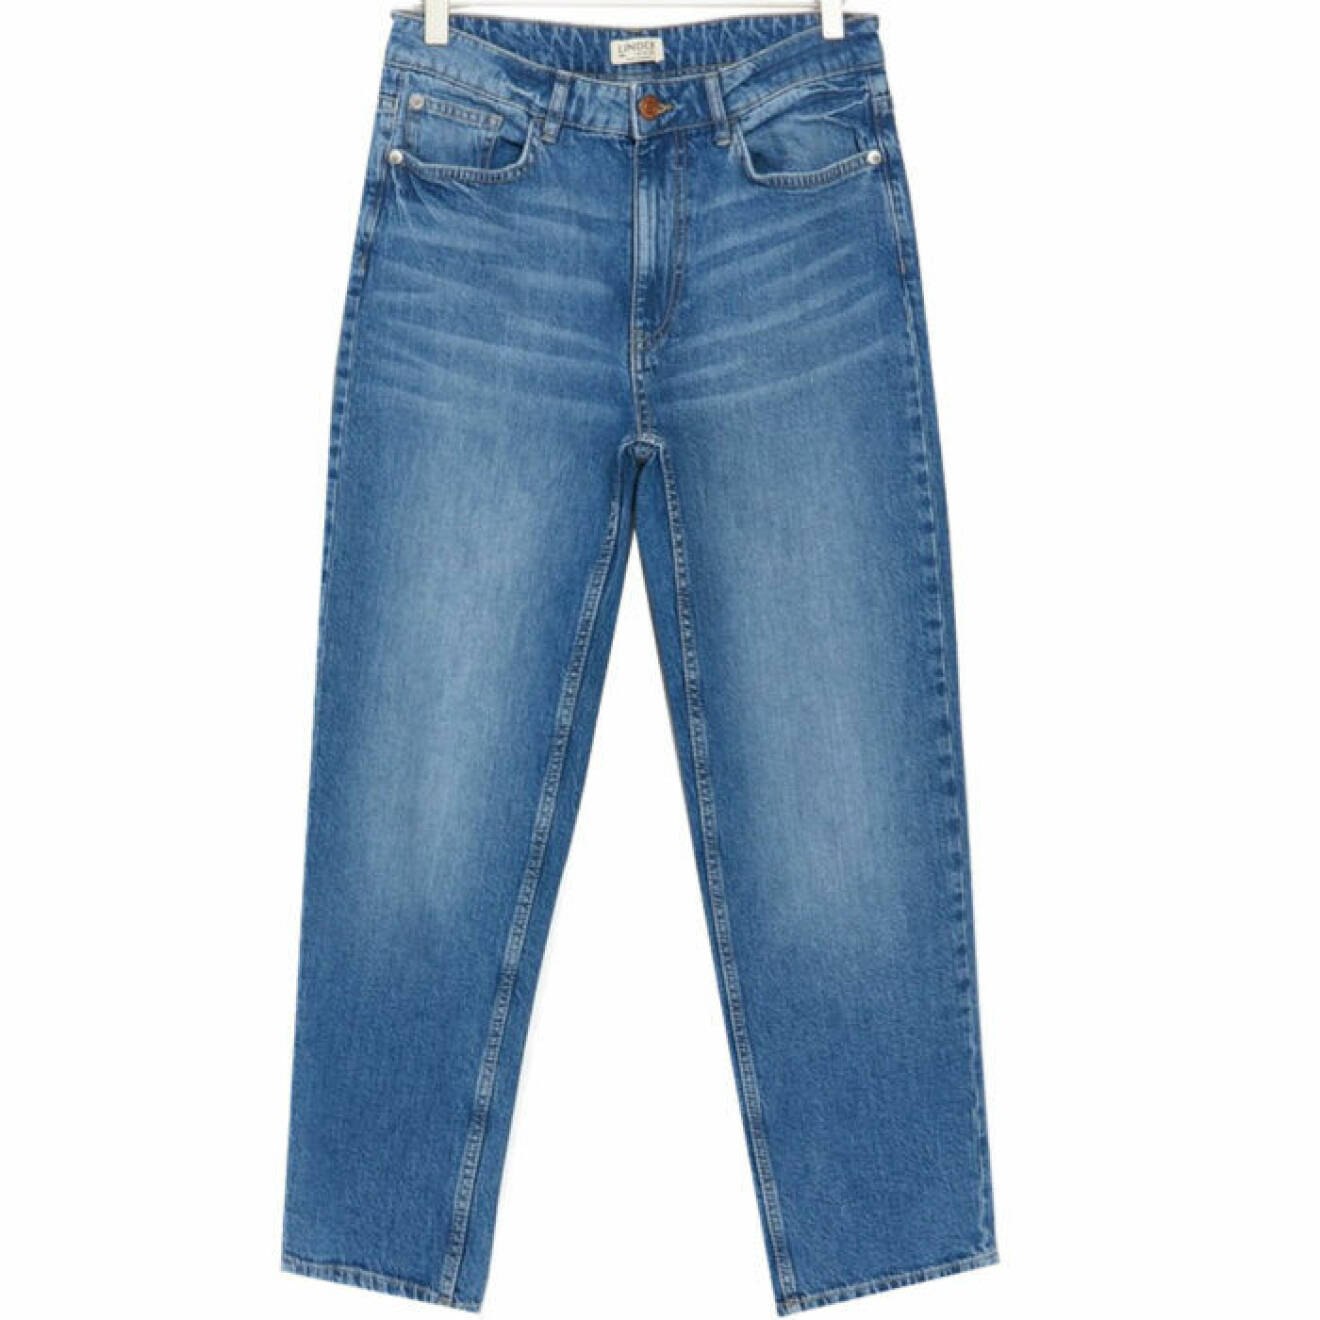 Jeans från Lindex